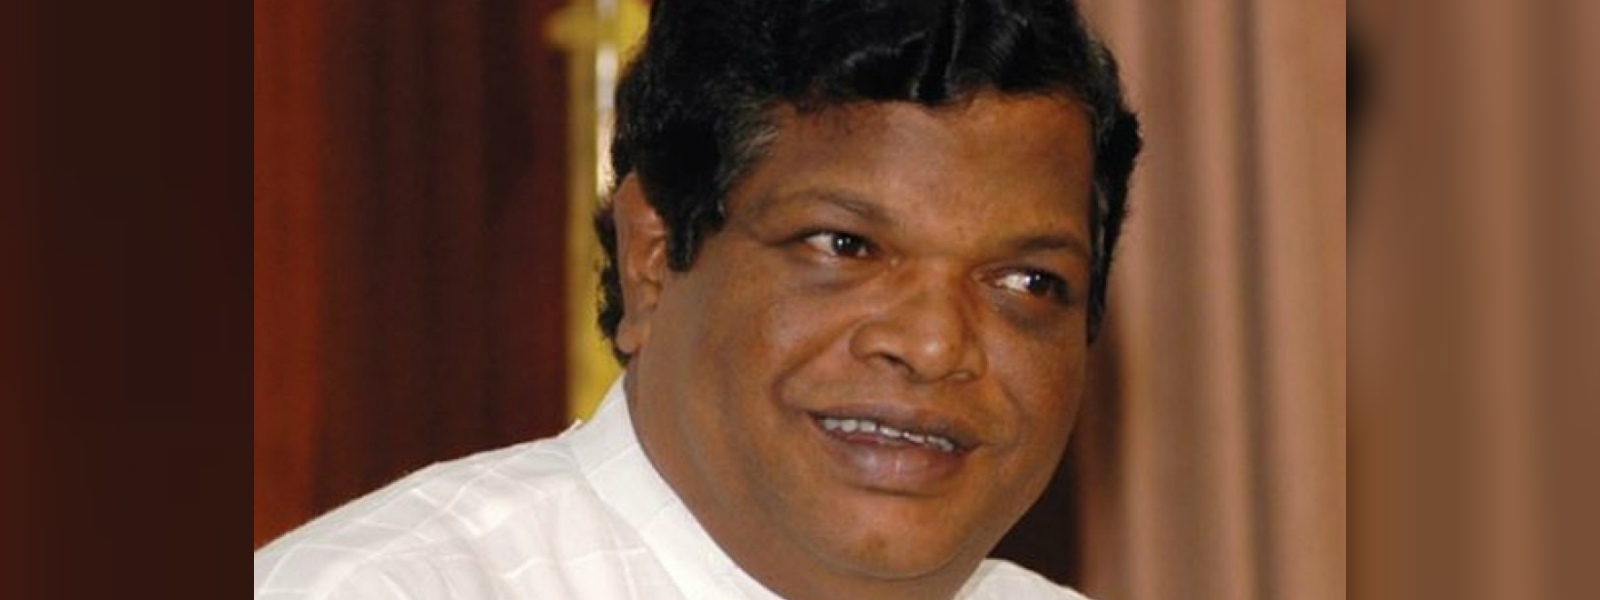 MP Bandula Gunawardena visits Opposition Leader